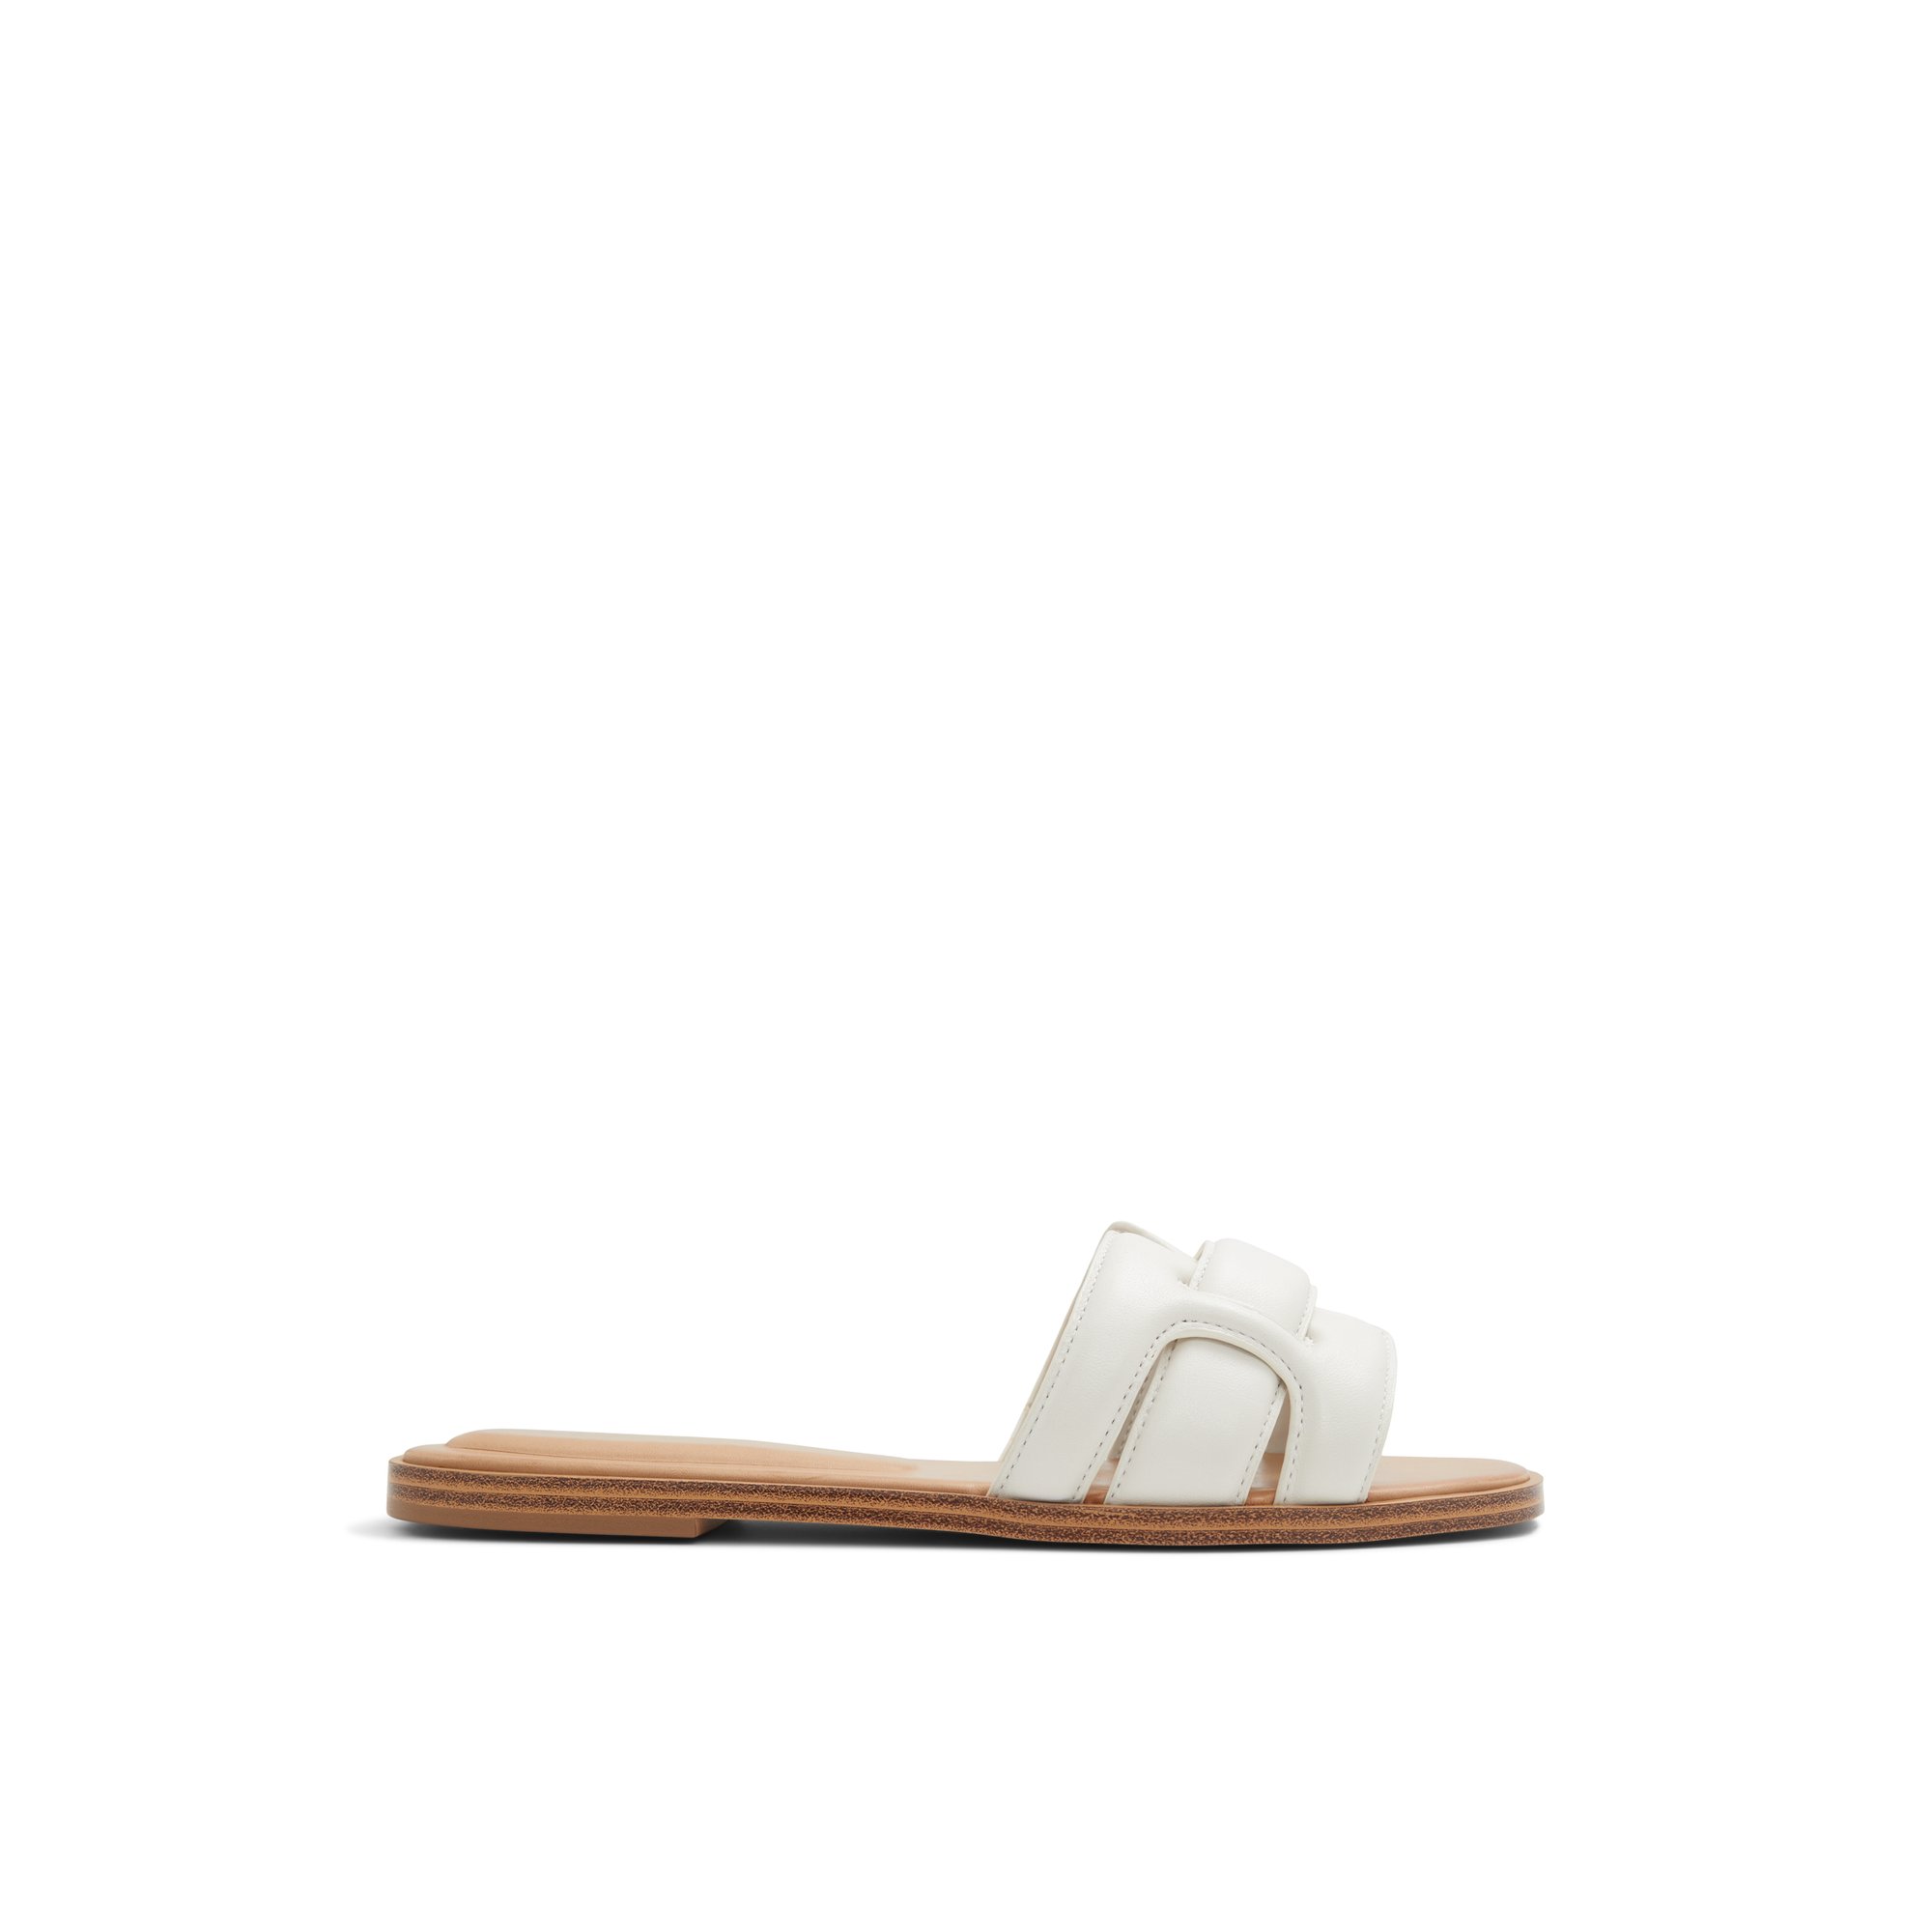 ALDO Elenaa - Women's Flat Sandals - White